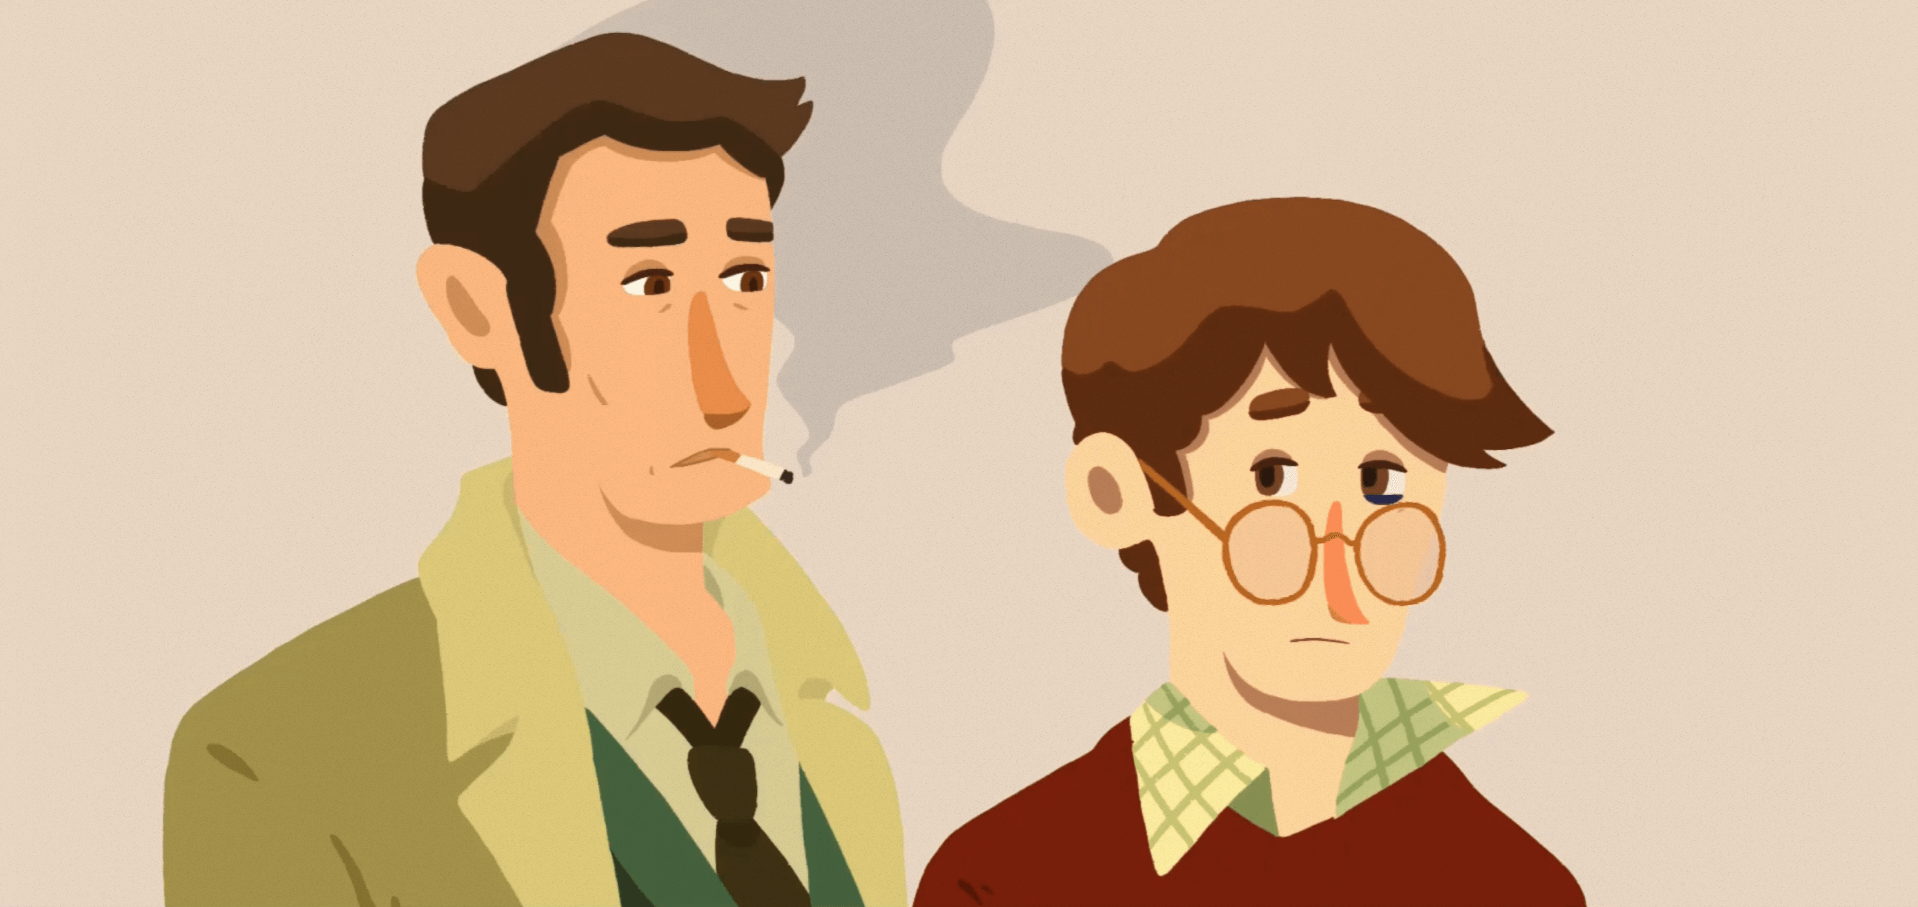 Une image fixe du personnage principal Eugène et du détective Malseki - votre guide et donneur d'indices pour le jeu.  Maleski fume une cigarette, jouant le stéréotype du détective maussade.